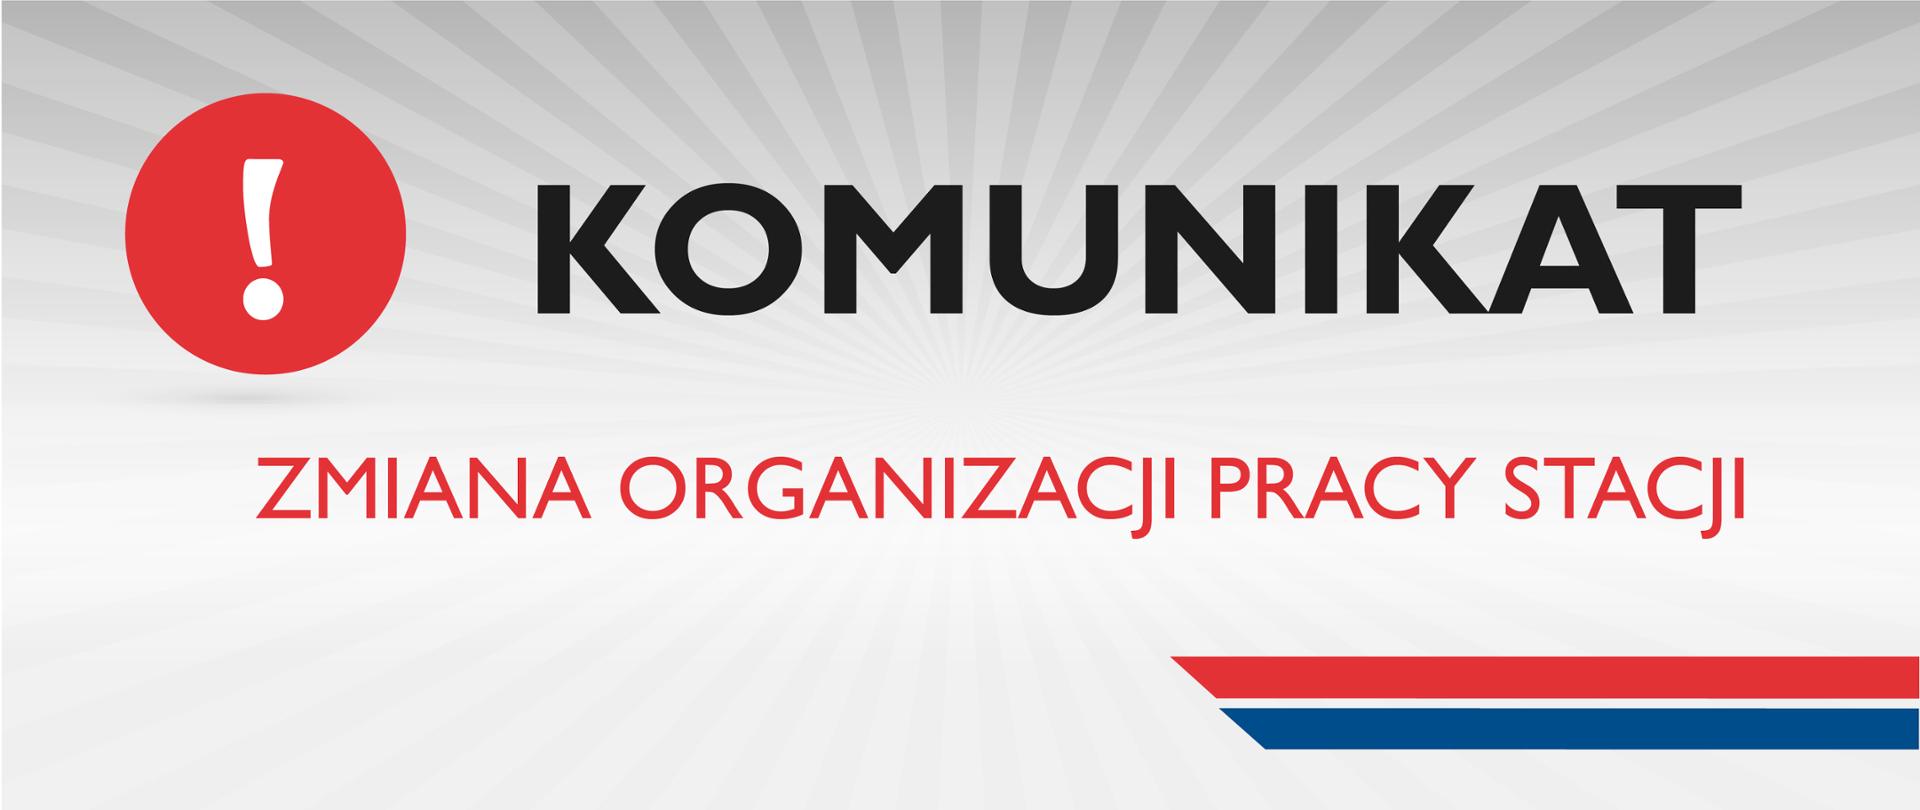 Baner informacyjny o treści: Komunikat! Zmiana organizacji pracy stacji